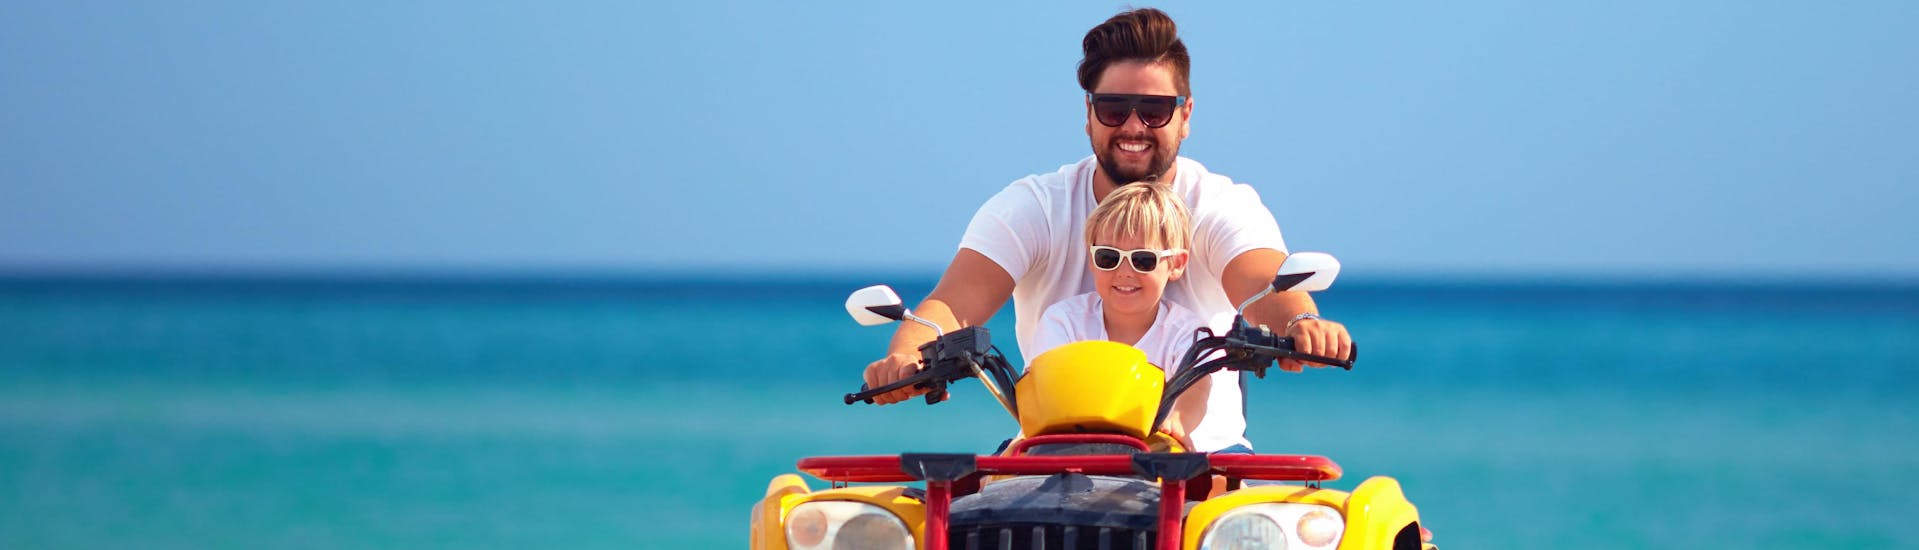 Pontevedra: Een vader rijdt tijdens de vakantie met zijn zoon op een quad.